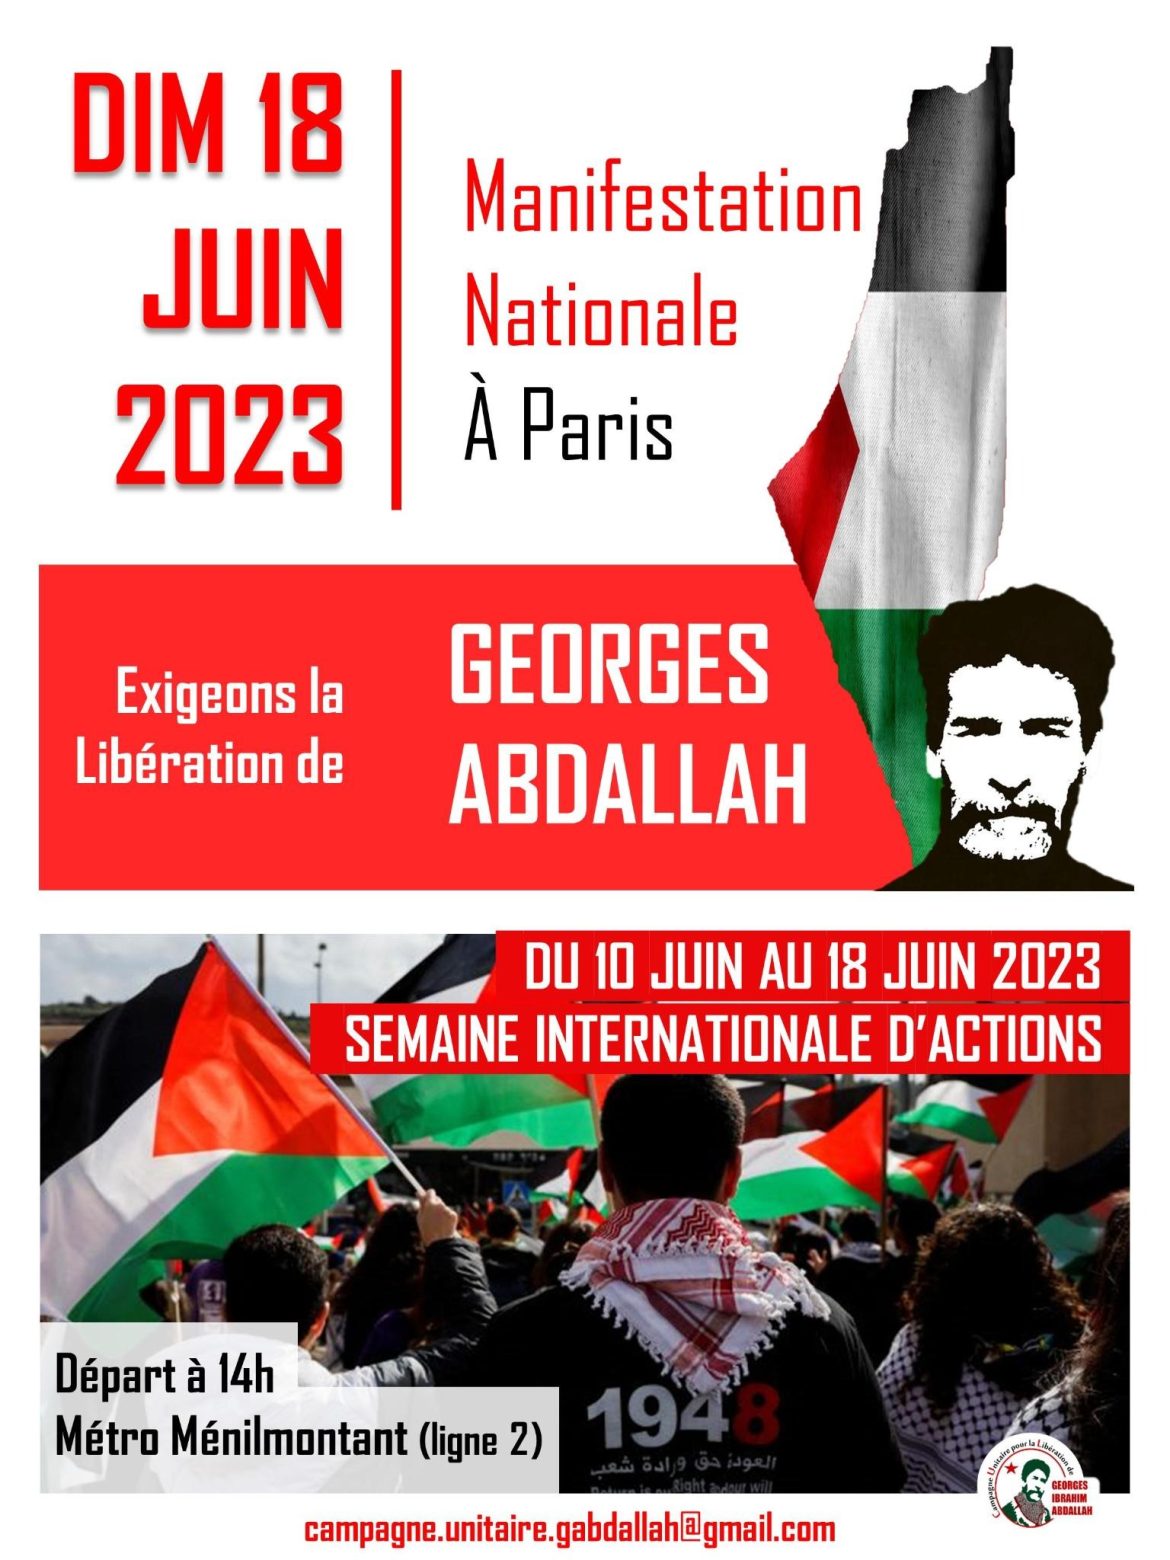 Toutes et tous à la manifestation nationale pour la libération de Georges Abdallah !